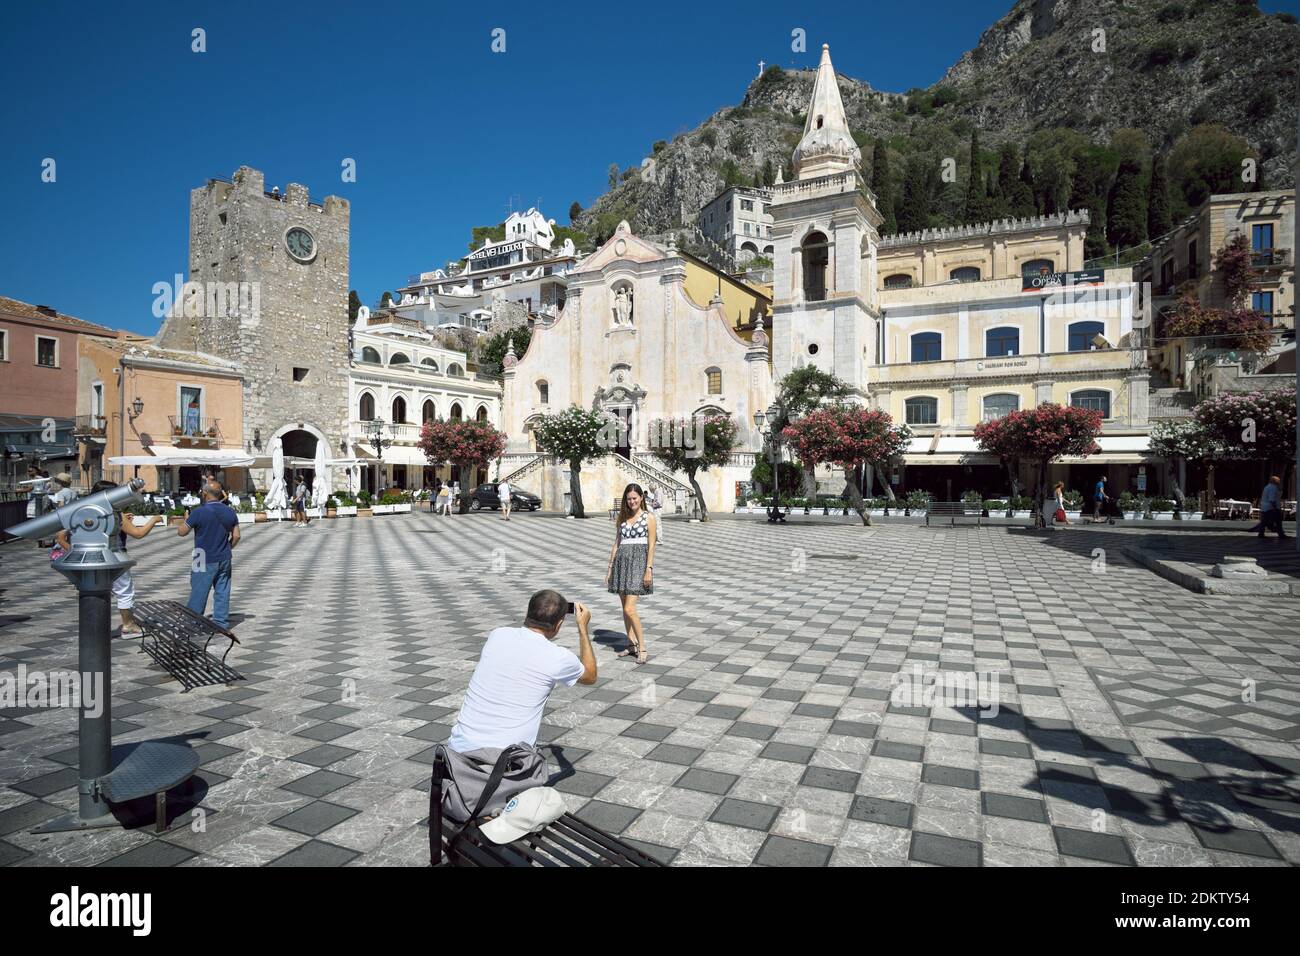 La piazza principale del centro storico di Taormina, punto di riferimento del turismo, una donna che posa per un souvenir fotografico Foto Stock